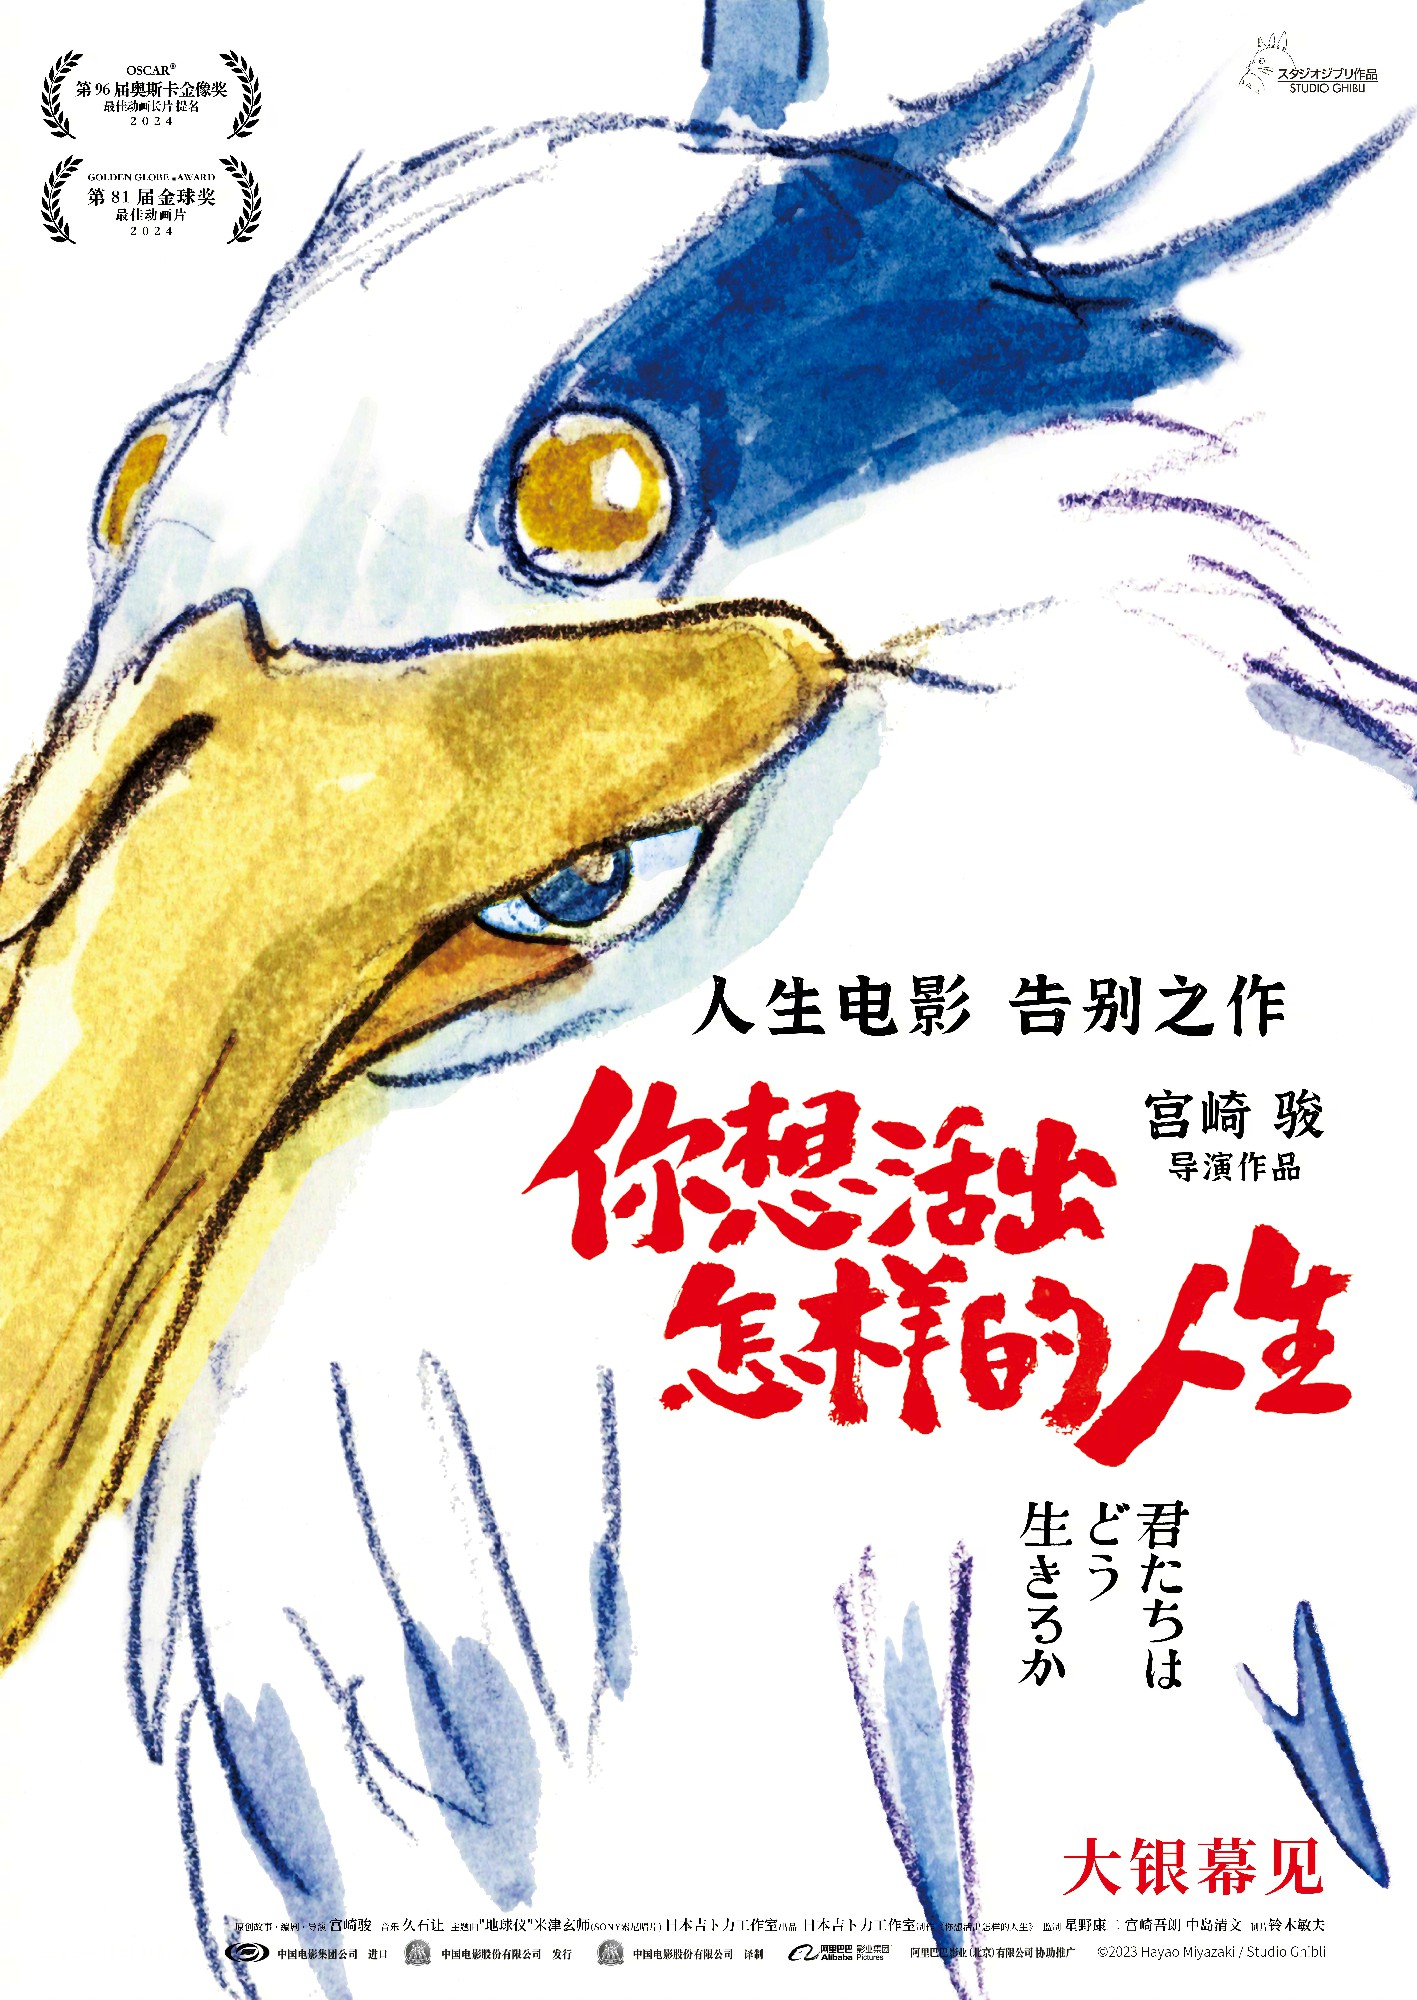 宫崎骏动画电影新作《你想活出怎样的人生》发布首张海报 - 知乎